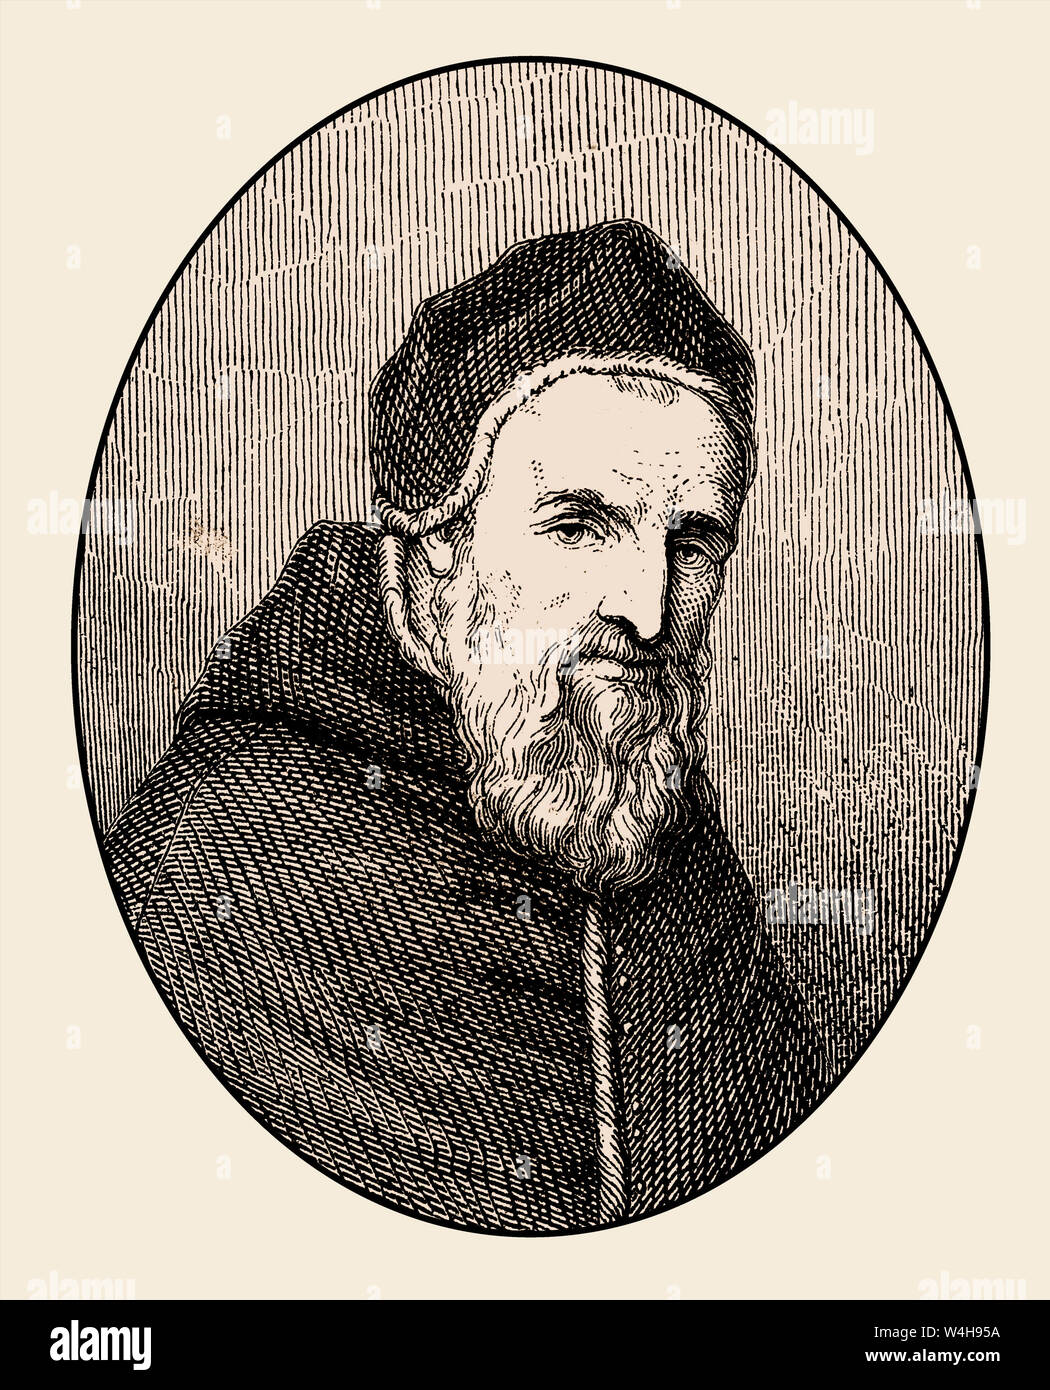 Sisto V o Felice Peretti di Montalto, 1521 - 1590, Papa della Chiesa Cattolica dal 1585-90 Foto Stock